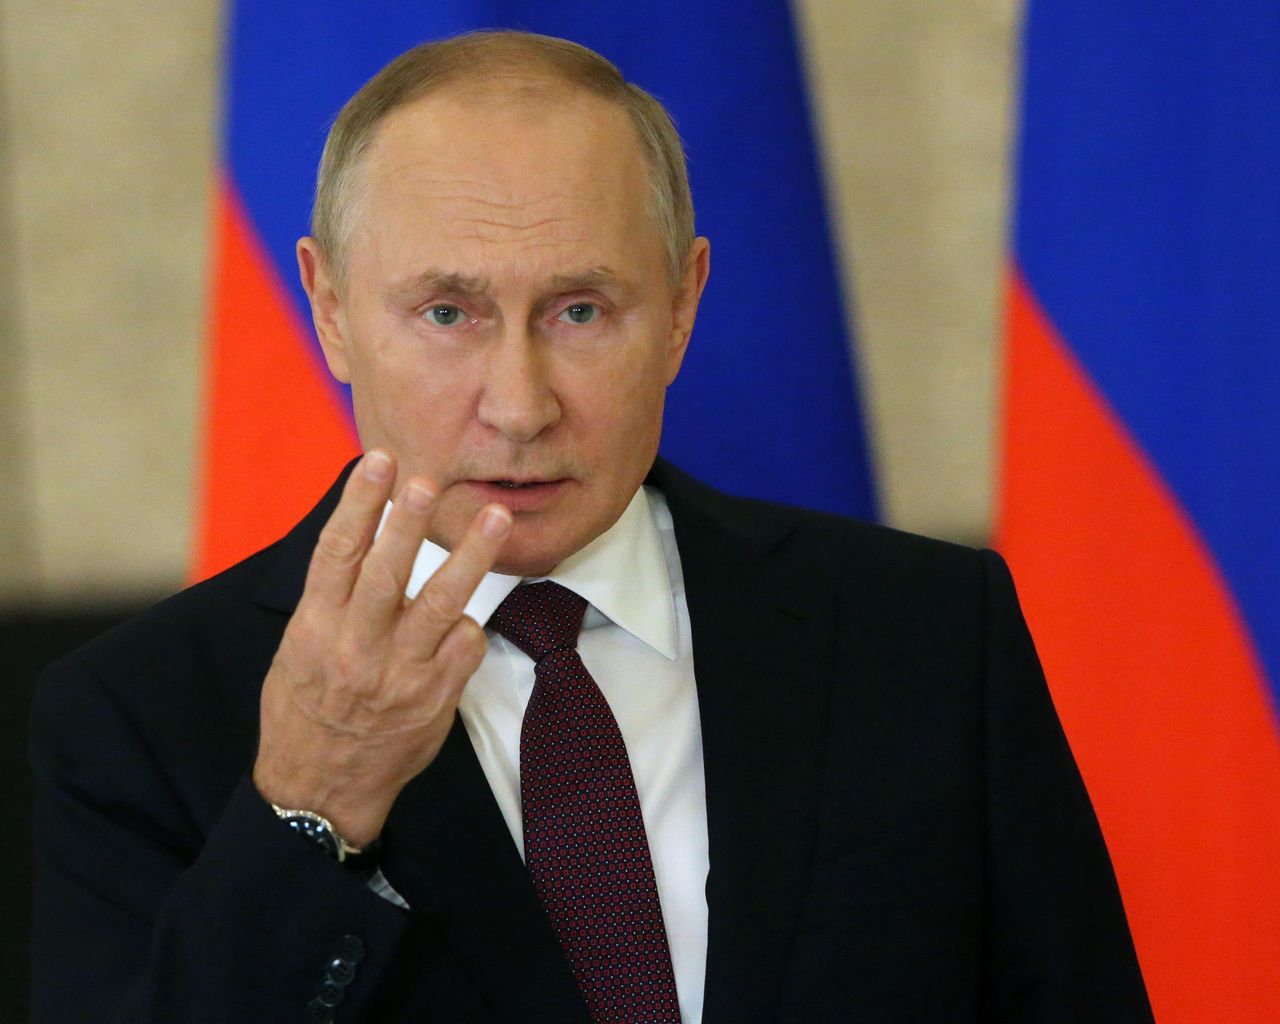 Rosja grozi atakiem nuklearnym. To dowód słabości sił konwencjonalnych